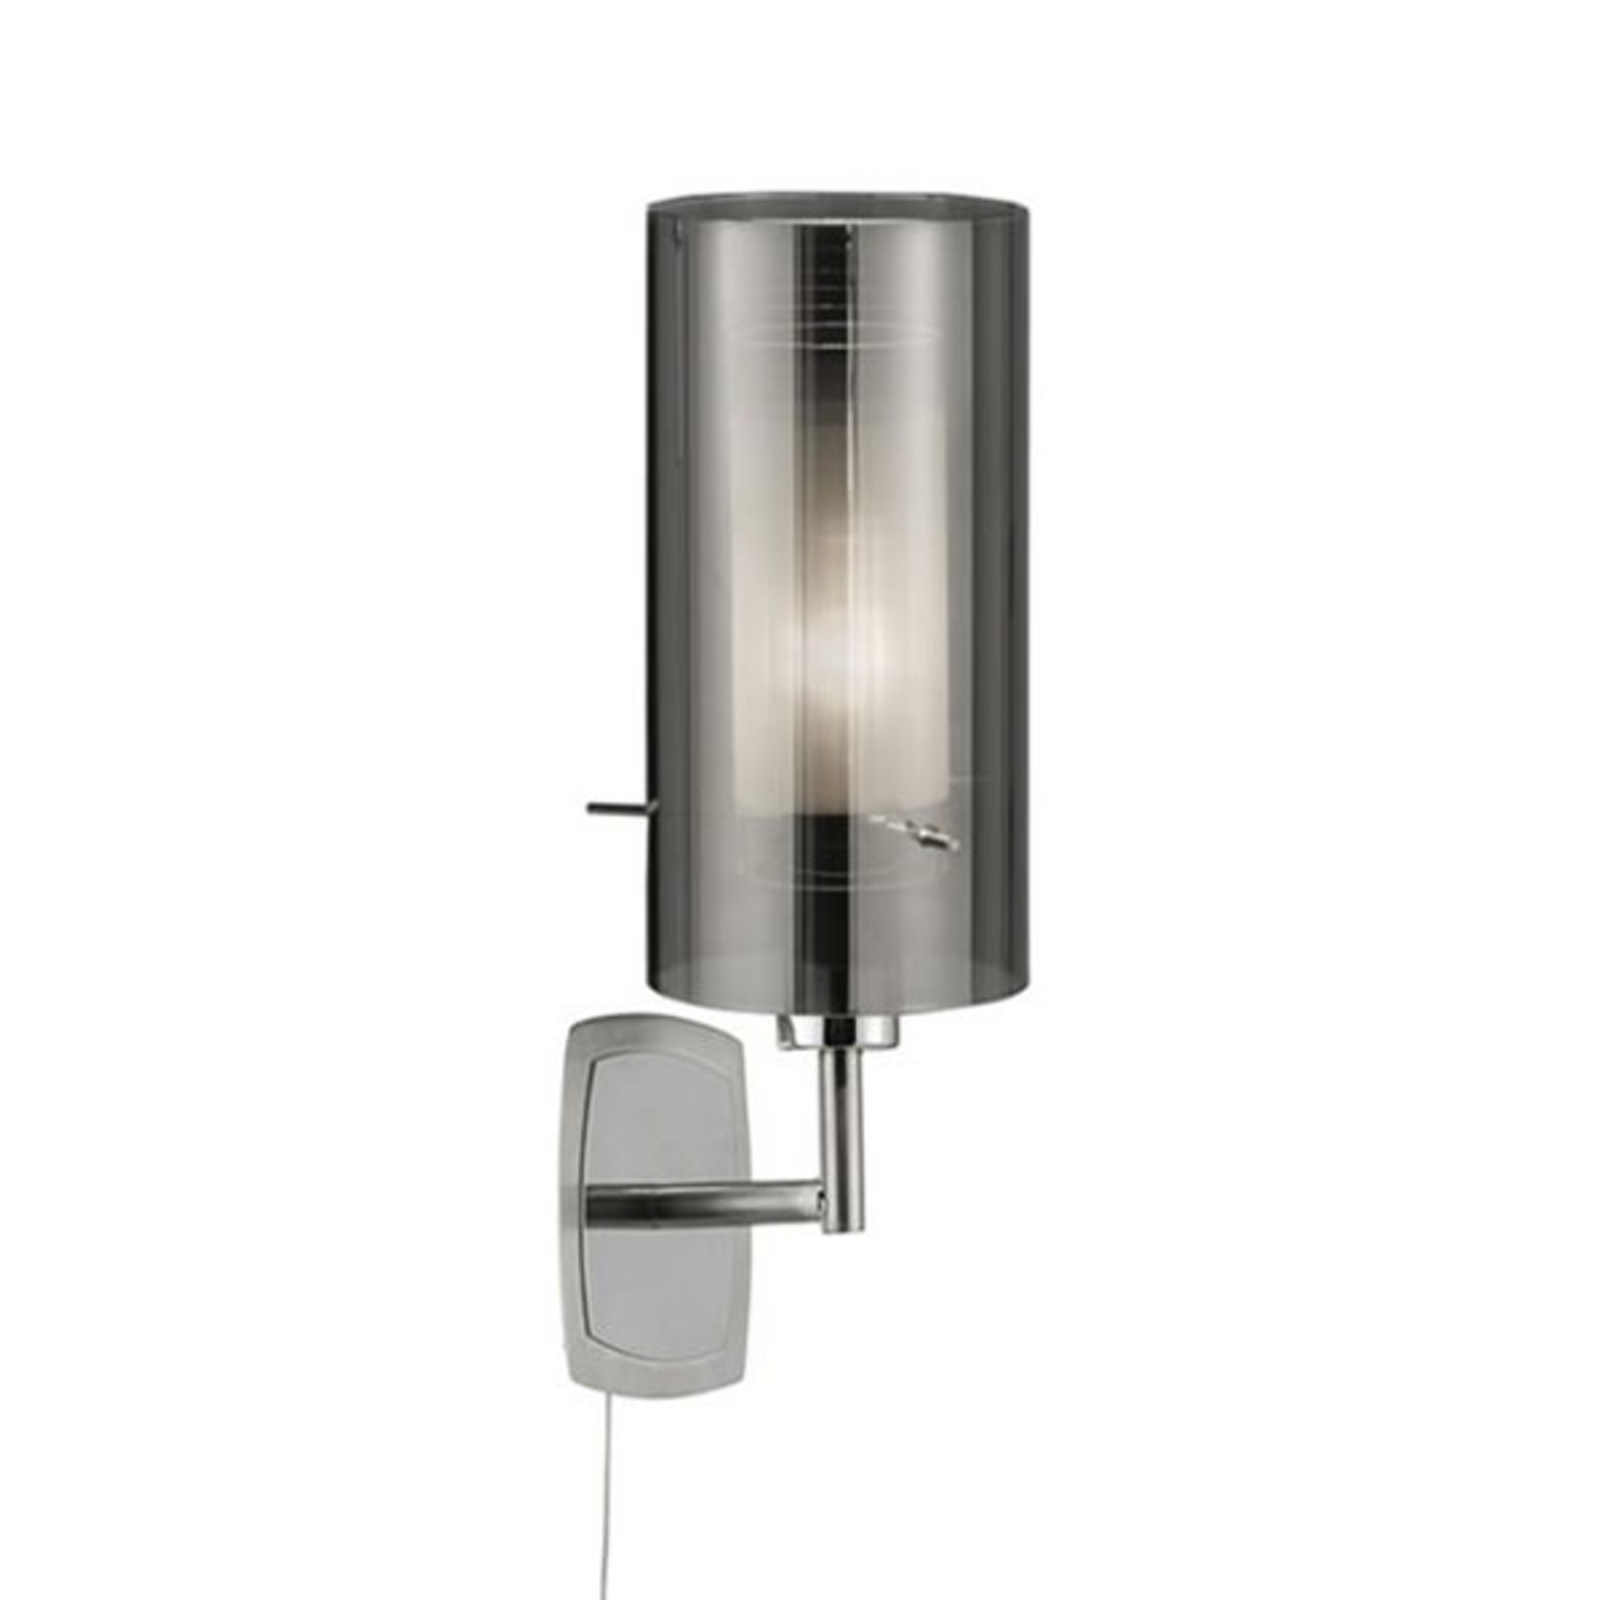 Wegversperring Toegepast voorbeeld Wandlamp Duo 2, rookglas/chroom met schakelaar | Lampen24.nl